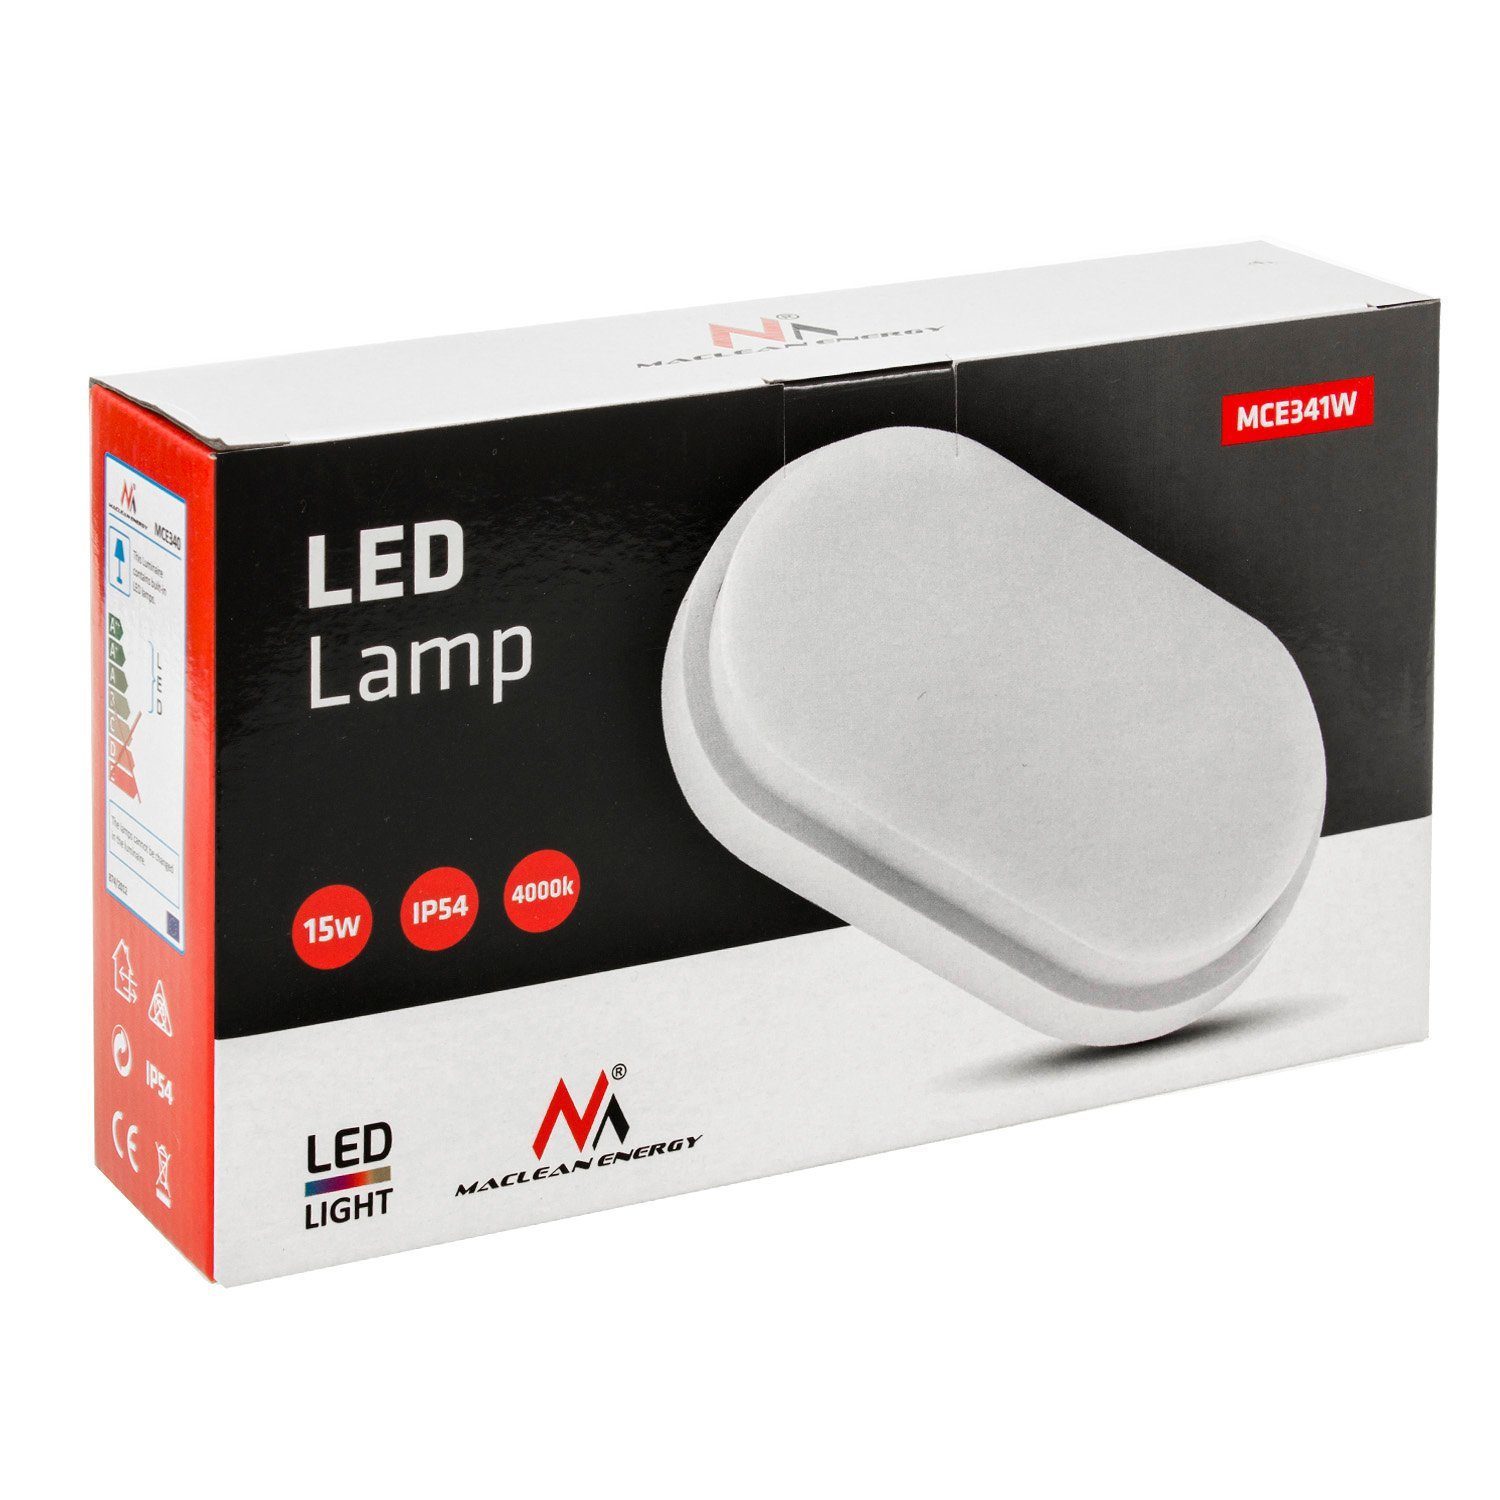 Maclean LED Deckenleuchte MCE341, Wand- IP54 grau/weiß LED 15W 1100lm und Deckenleuchte